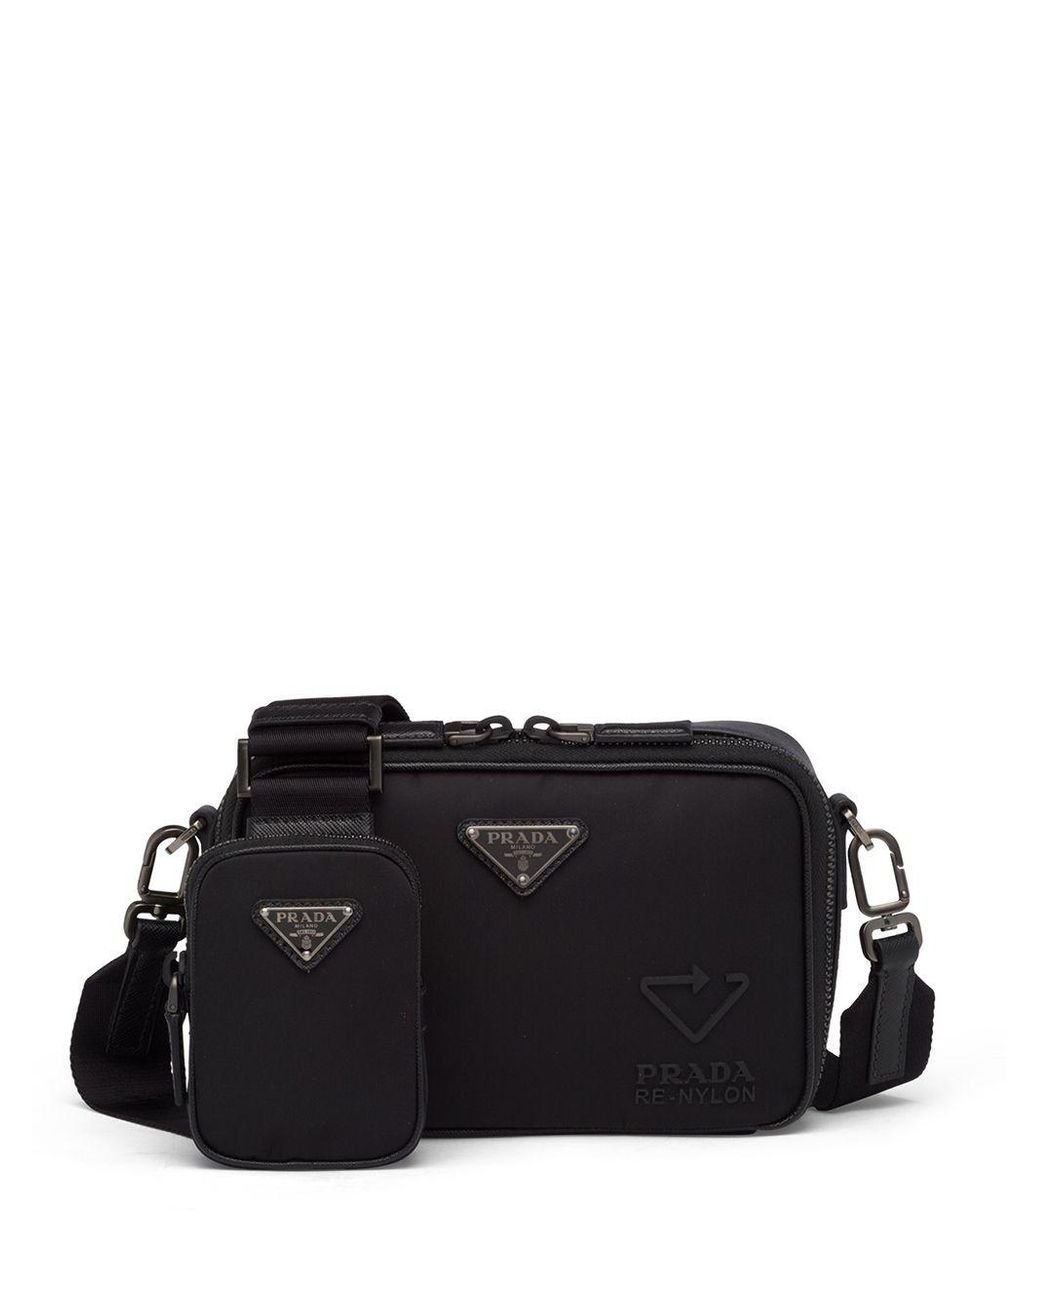 Prada Black Re-Nylon and Saffiano Leather Brique Crossbody Bag Prada